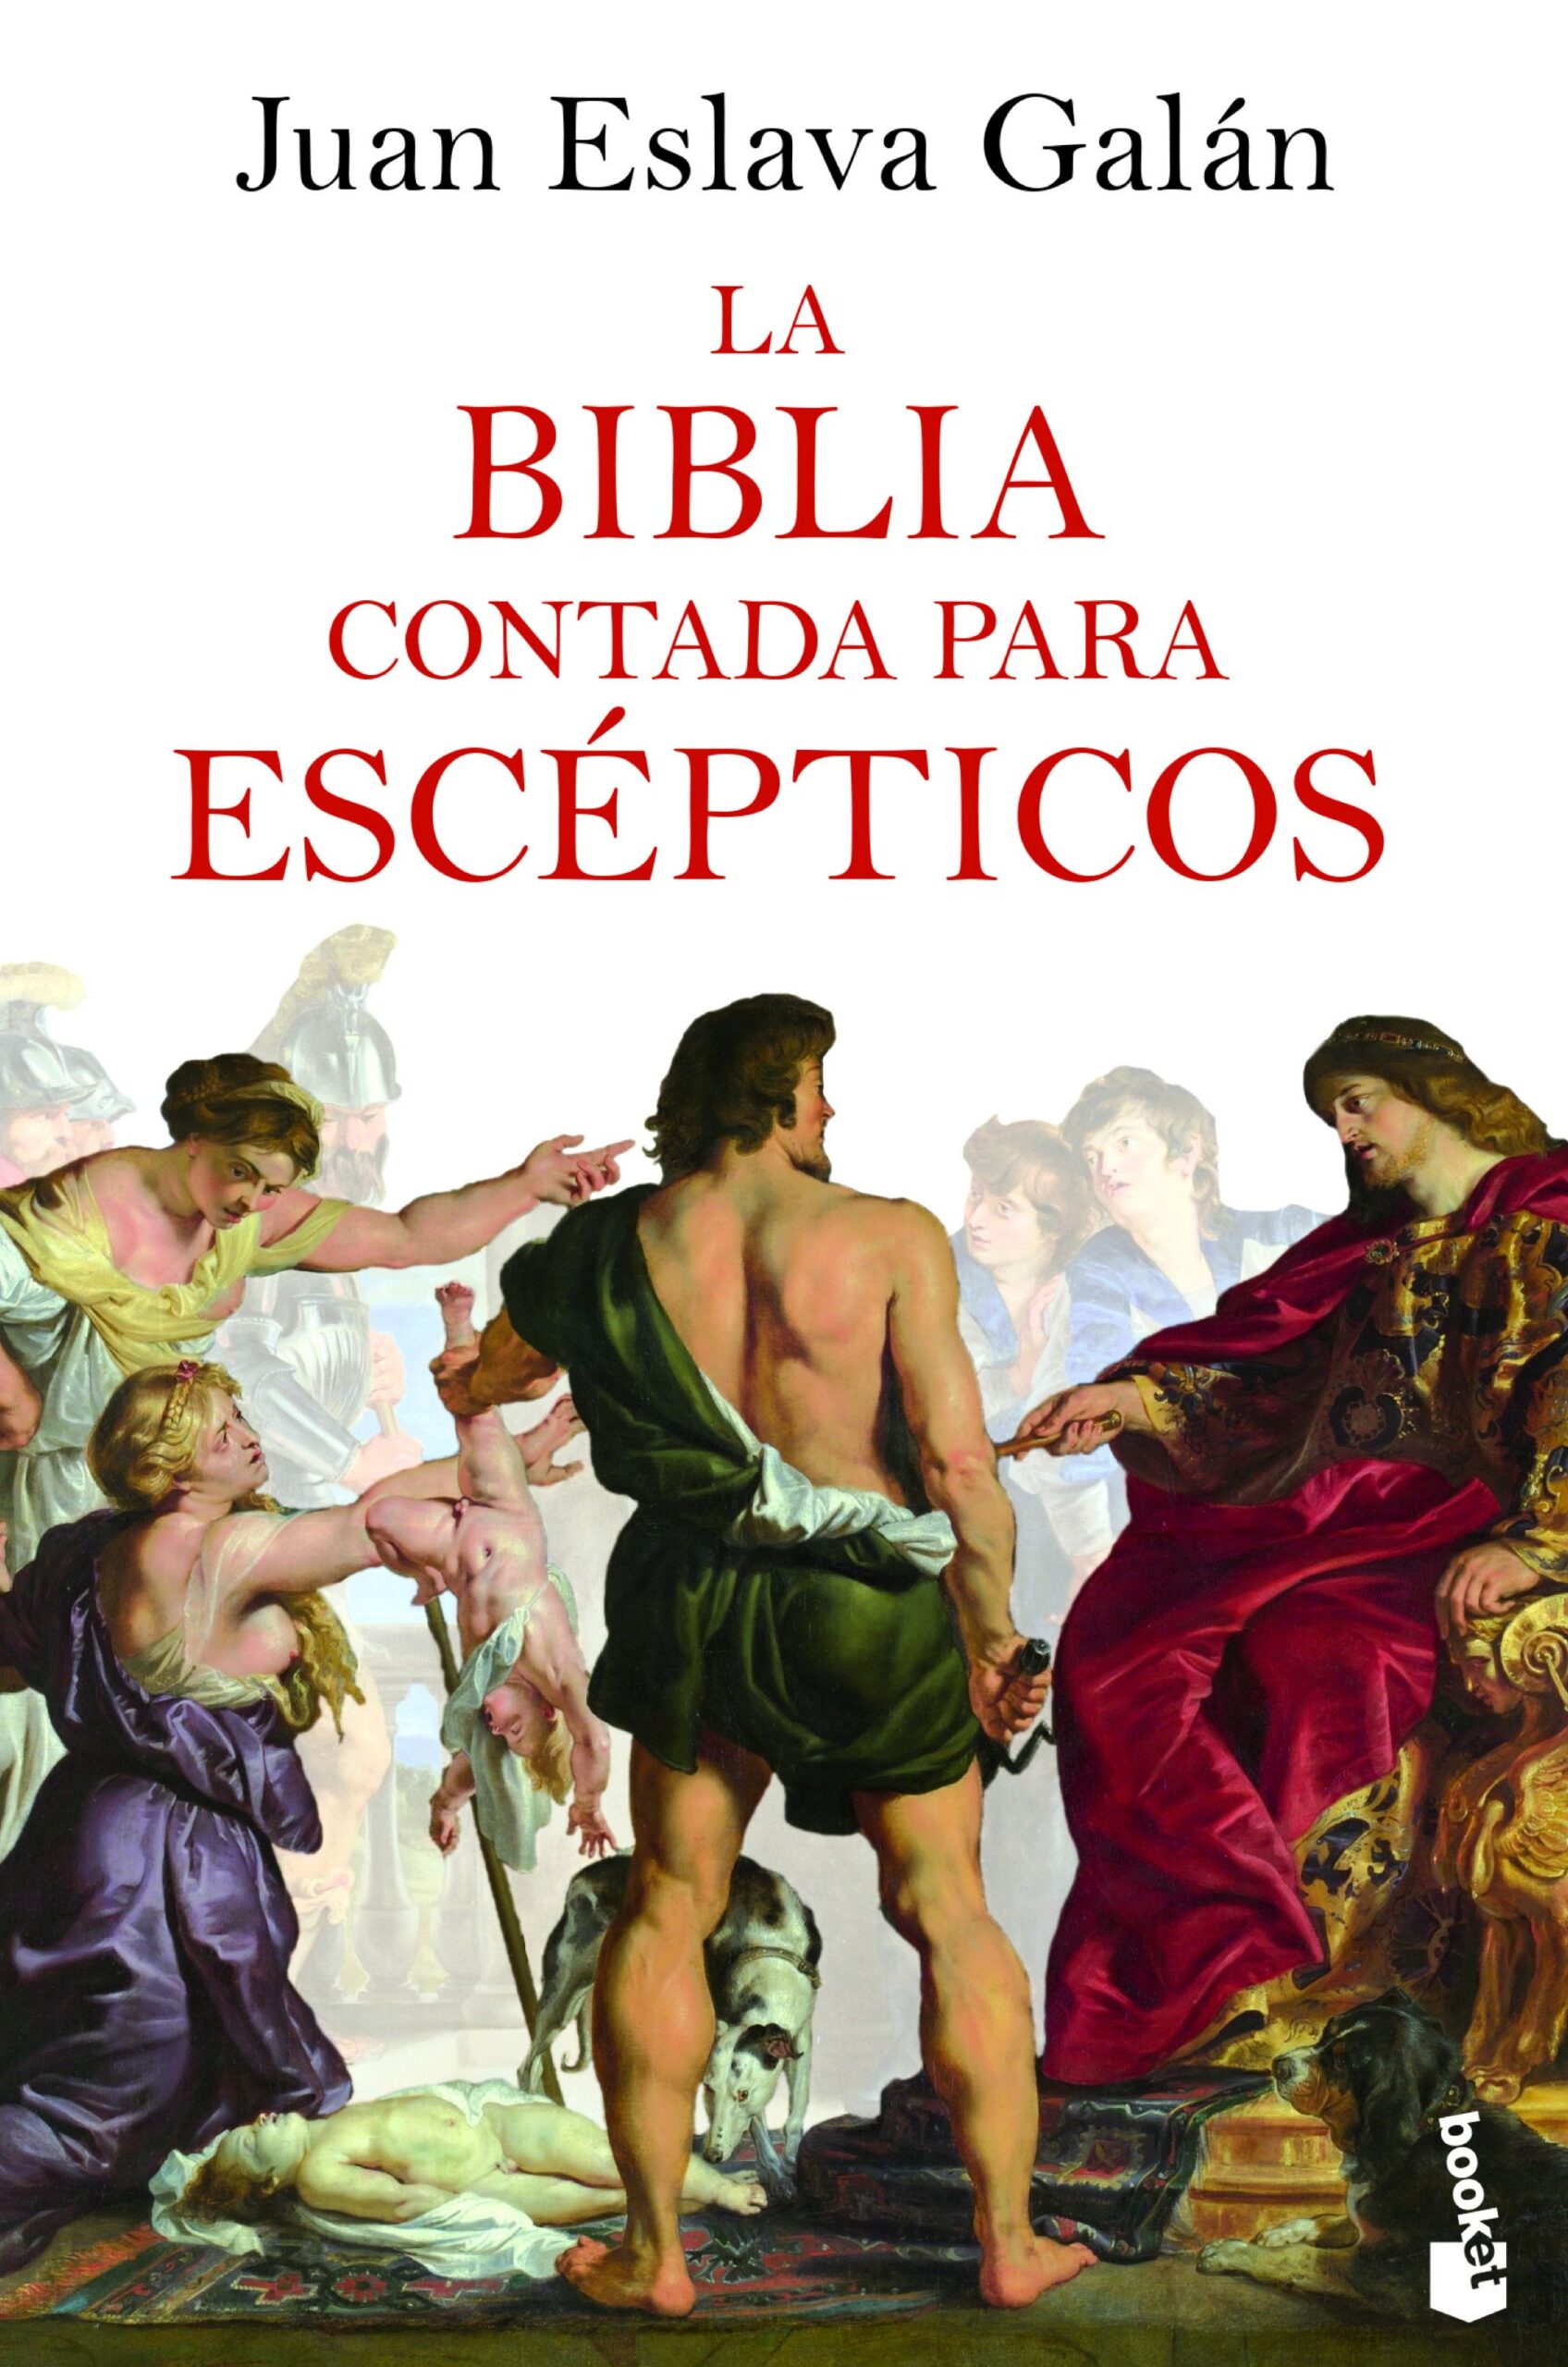 Juan Eslava Galán - La Biblia contada para escépticos